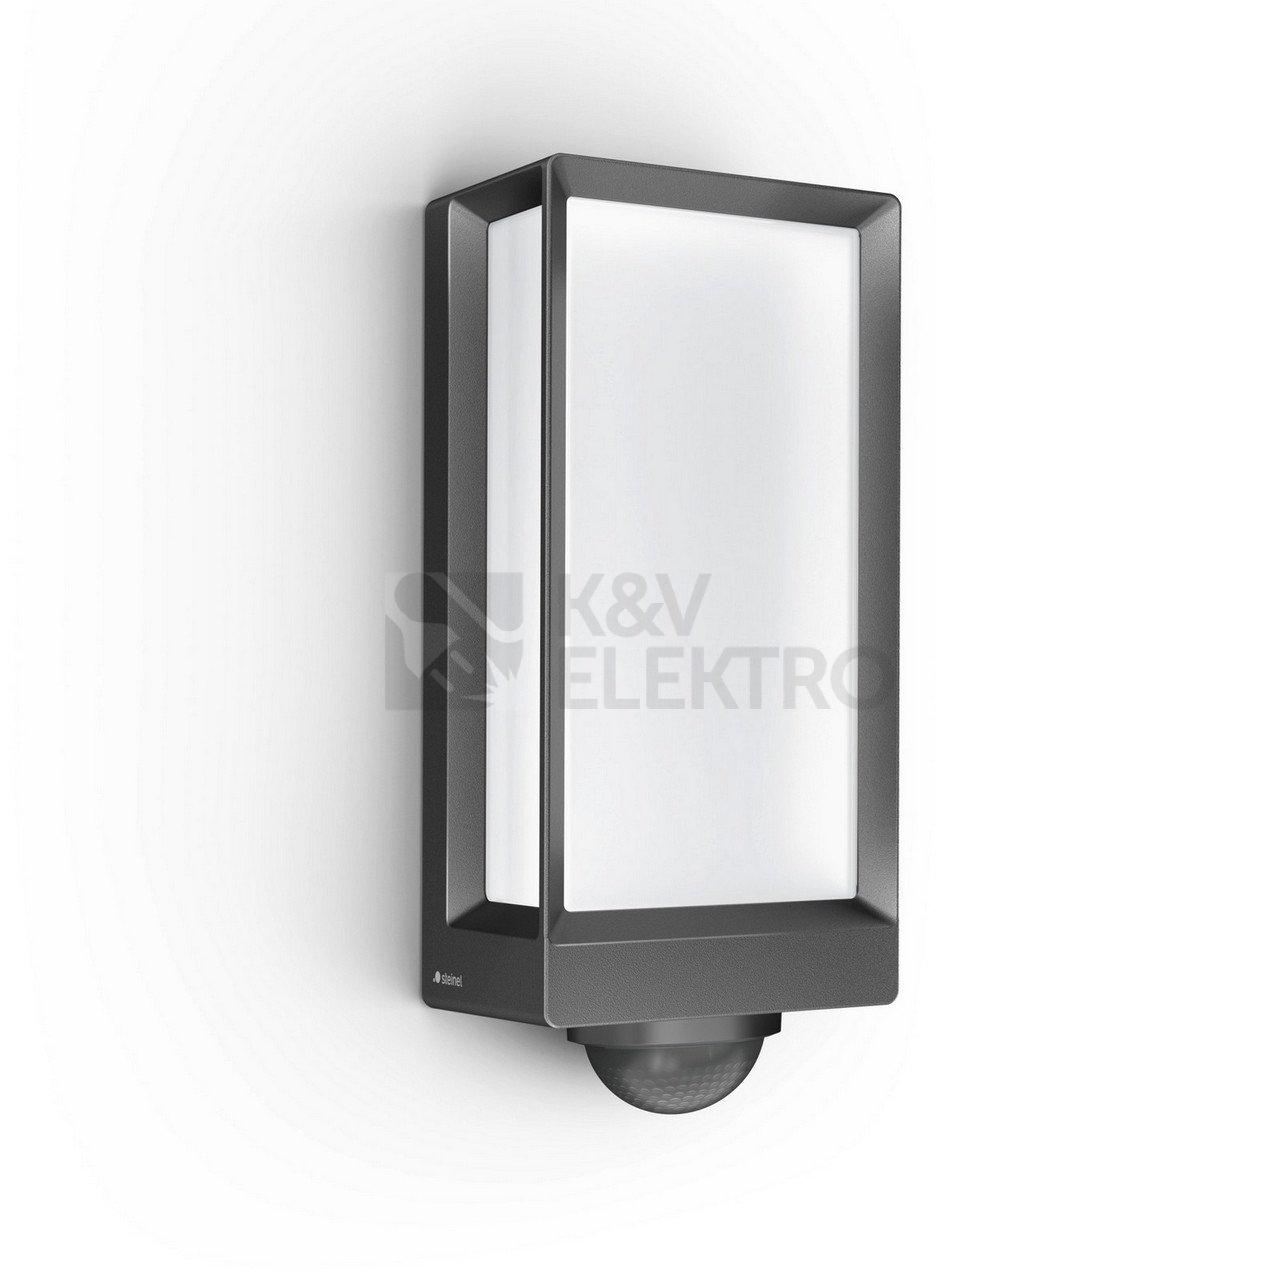 Obrázek produktu LED venkovní nástěnné svítidlo Steinel L 42 SC antracit 085261 13W 1010lm 3000K s pohybovým čidlem 0